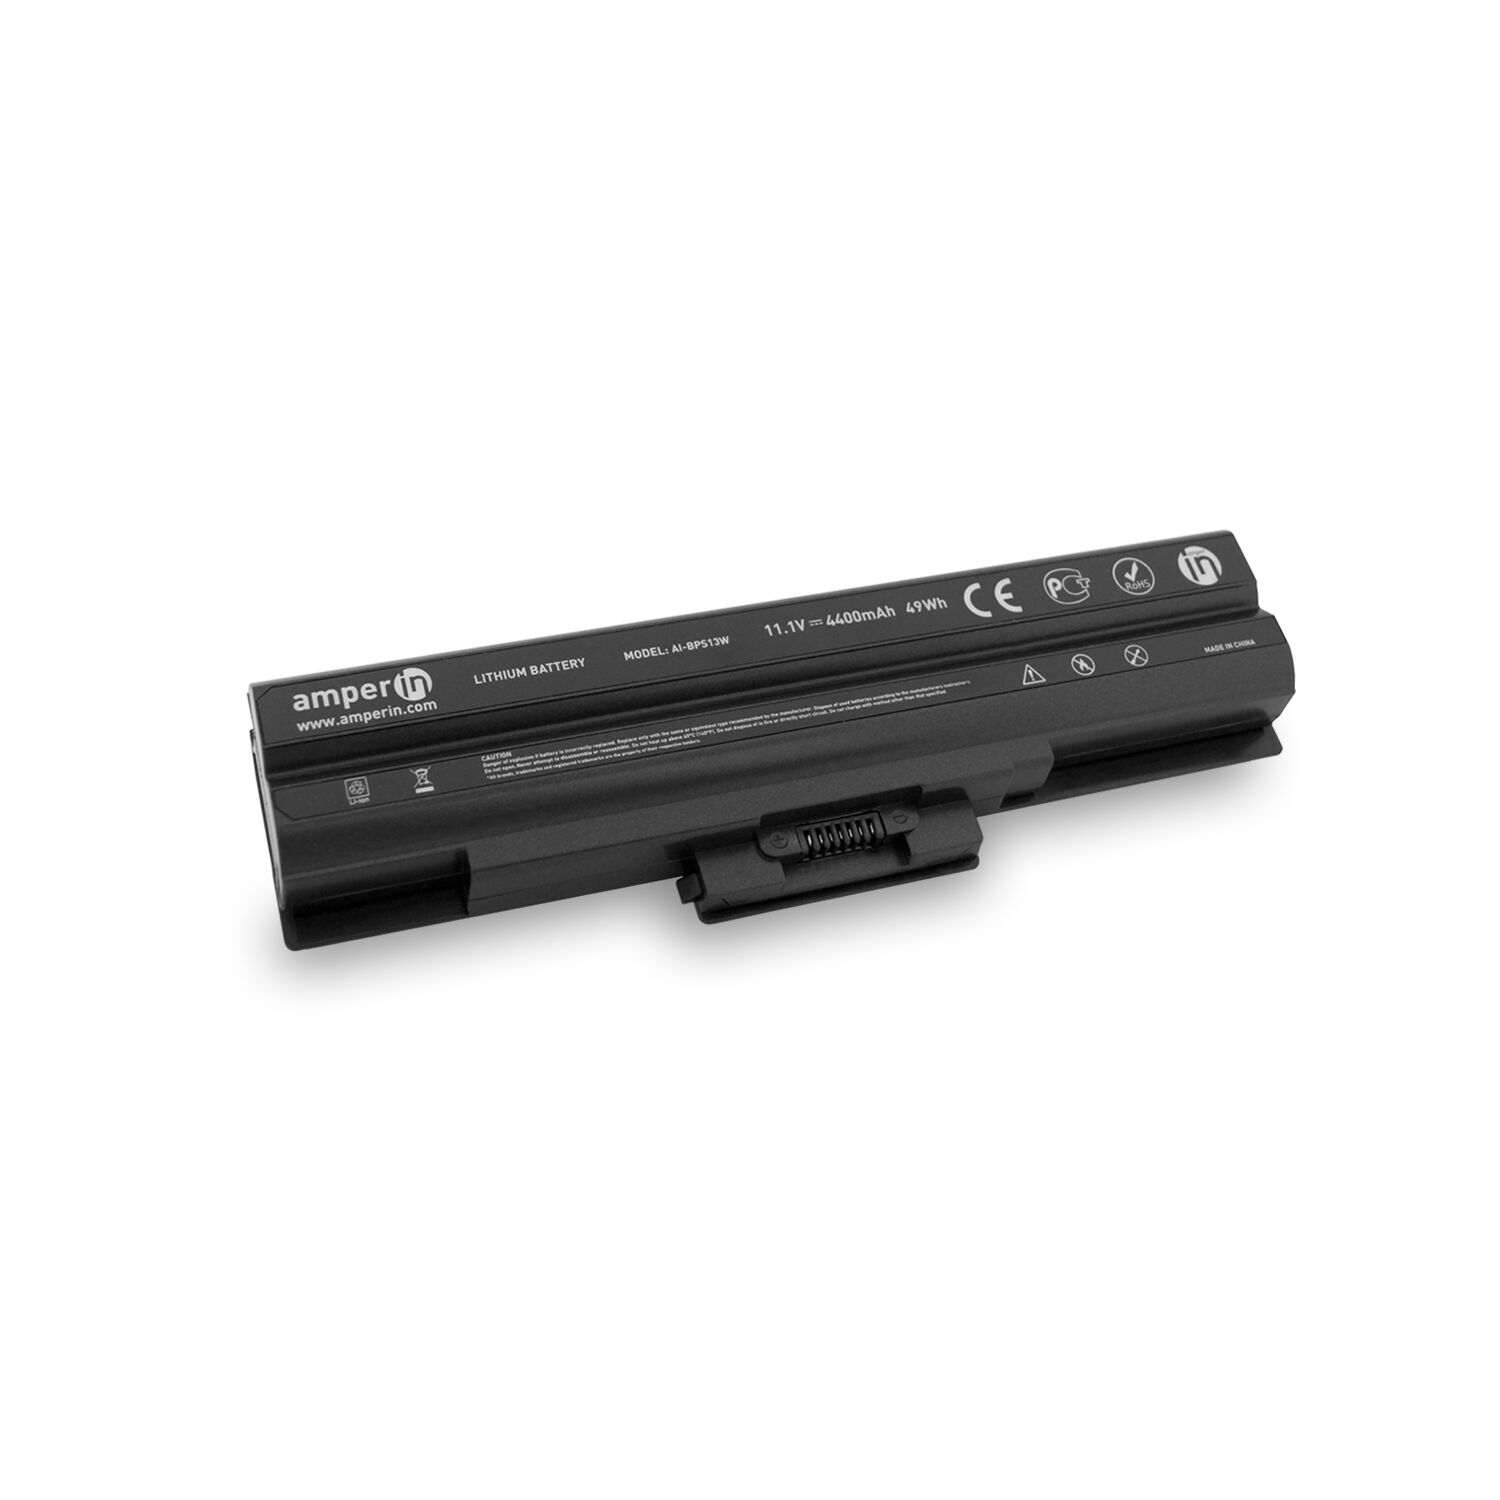 Аккумуляторная батарея AI-BPS13W для ноутбука Sony Vaio VGN, VPC Series 11.1V 4400mAh Amperin черная